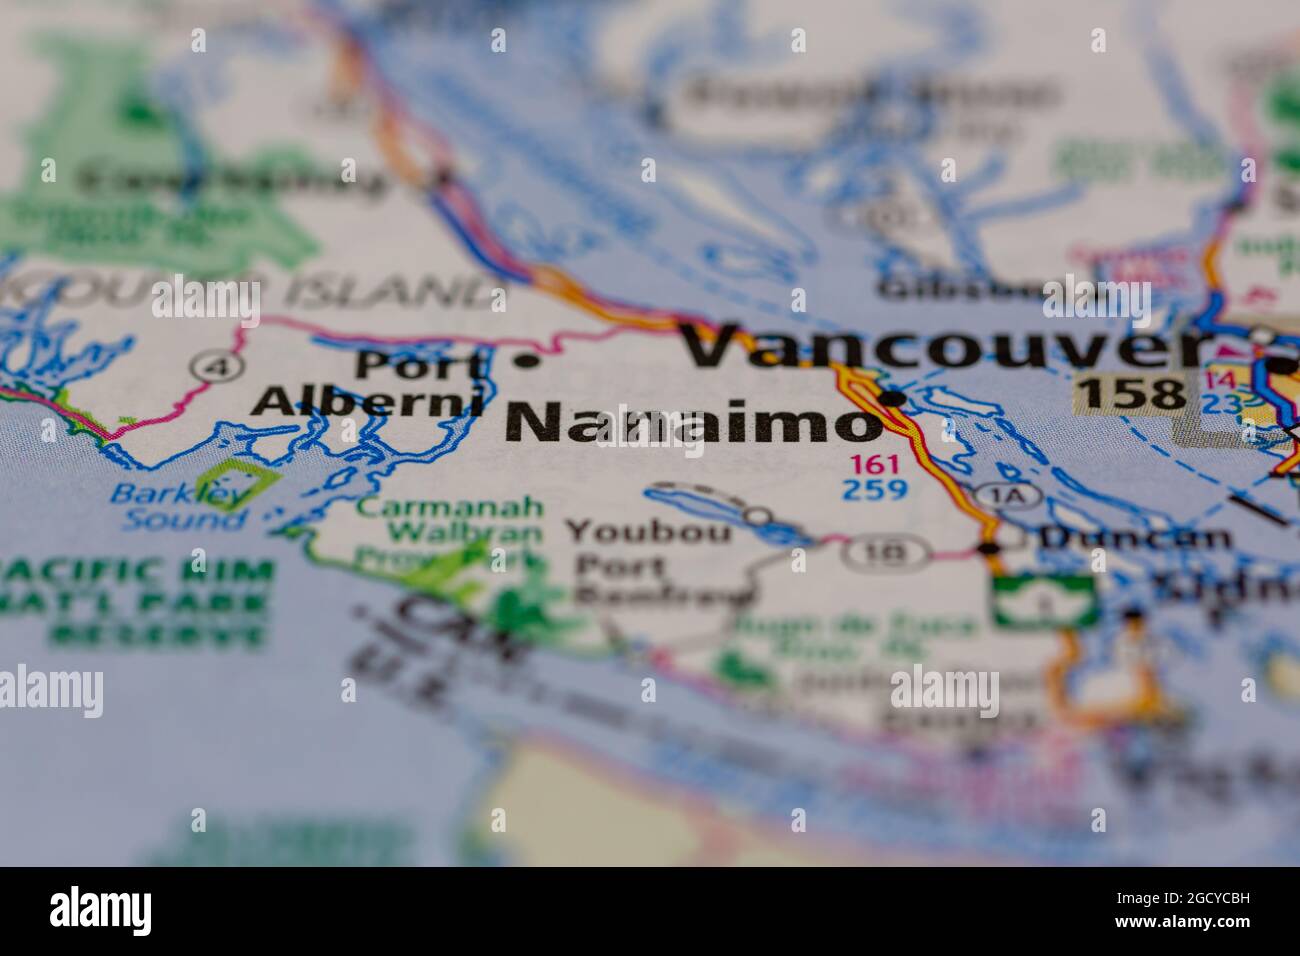 Nanaimo Vancouver Island Canada visualizzato su una mappa stradale o su una mappa geografica Foto Stock